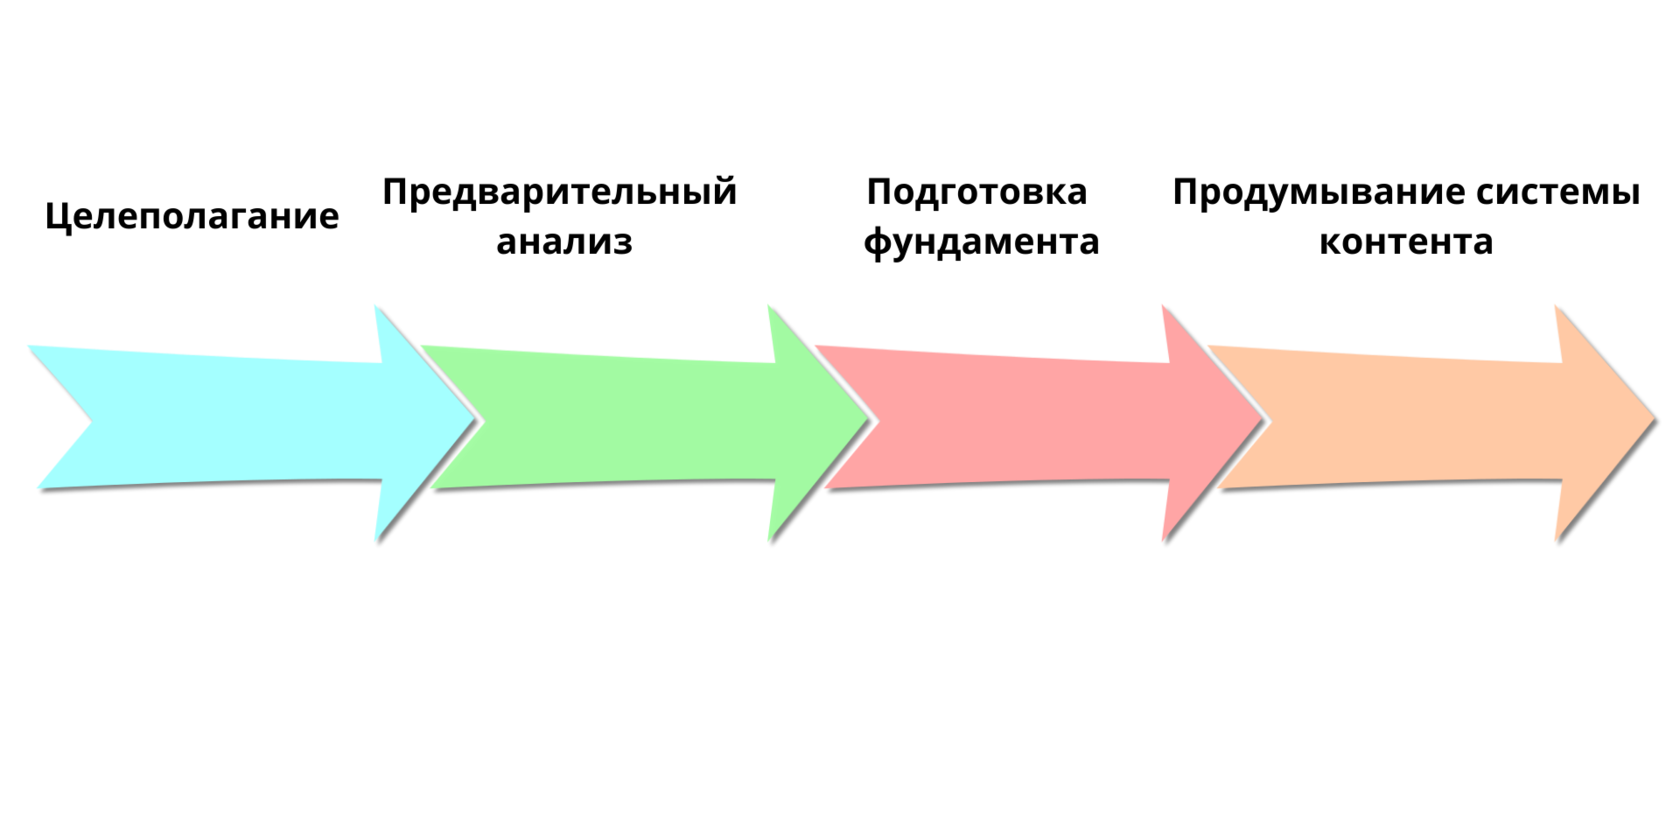 3 этапа контент стратегии